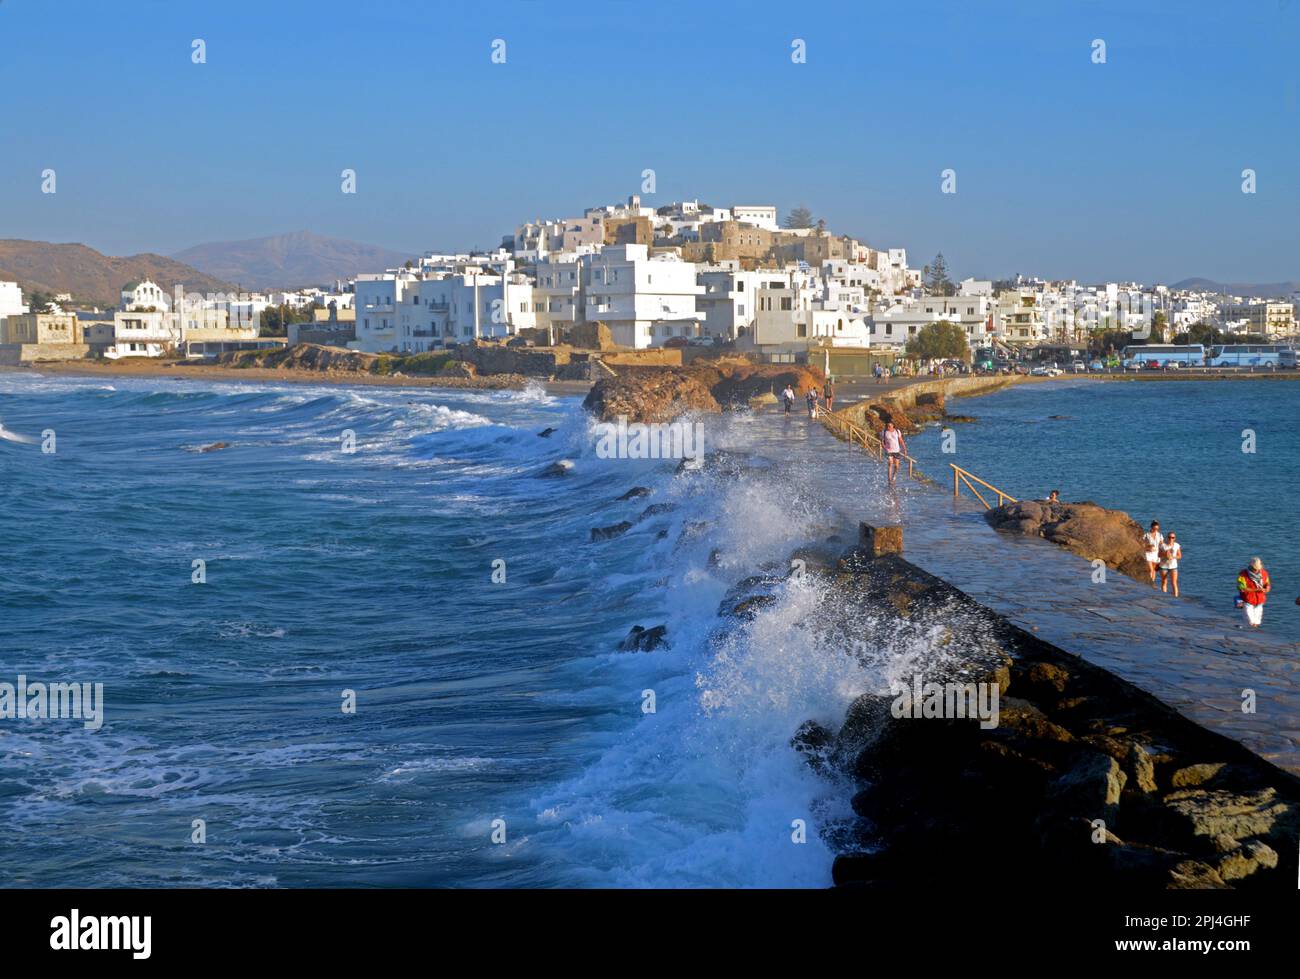 Grèce, île de Naxos: Les mers rugueuses laver la chaussée qui rejoint l'îlot de Palatia à l'île principale. Banque D'Images